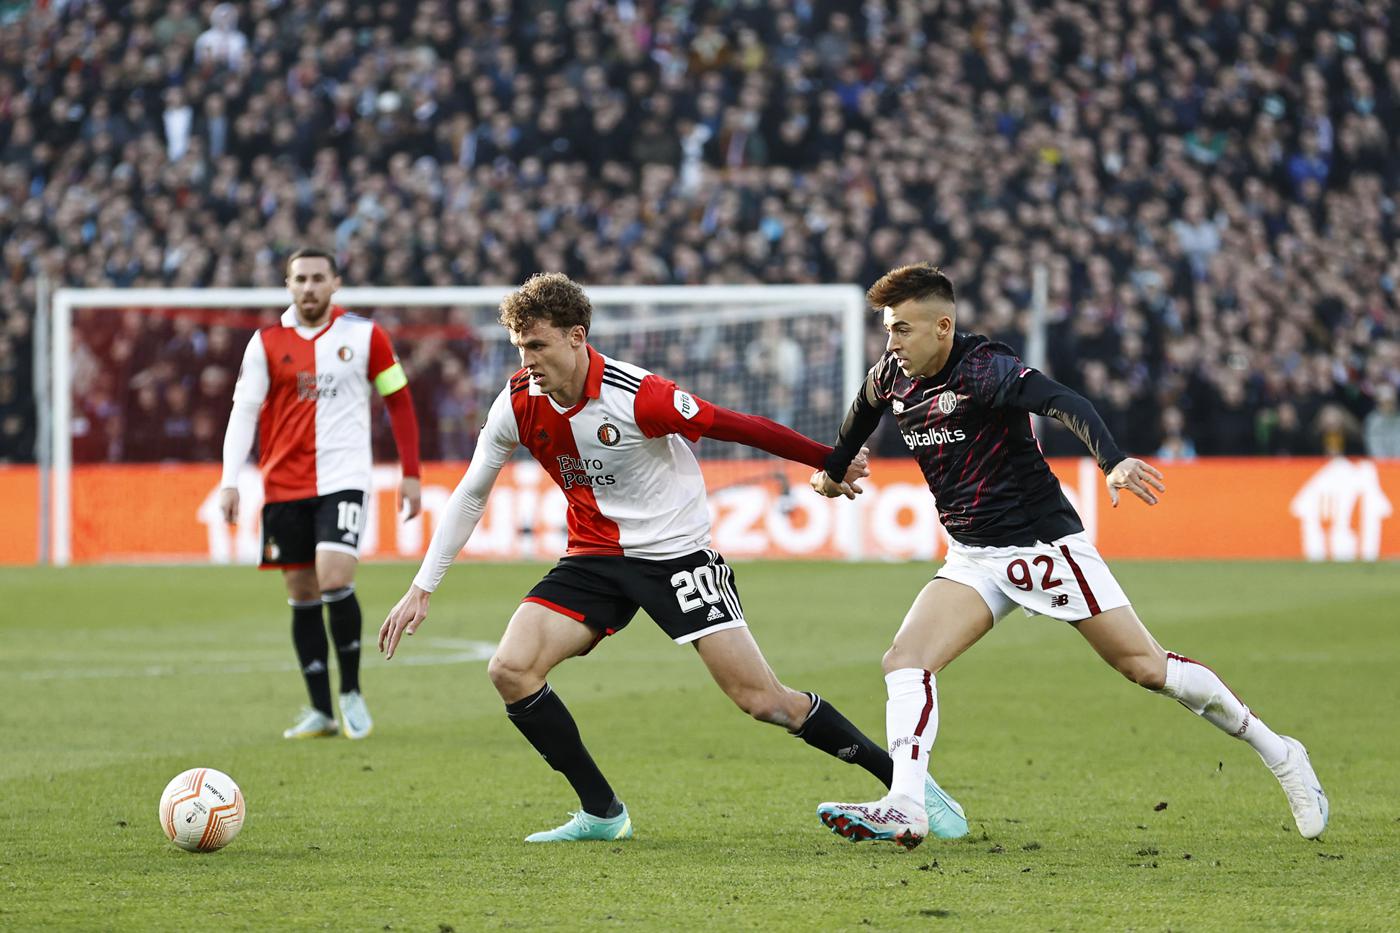 Feyenoord - Roma - 1:0. Europaliga. Spielbericht, Statistiken